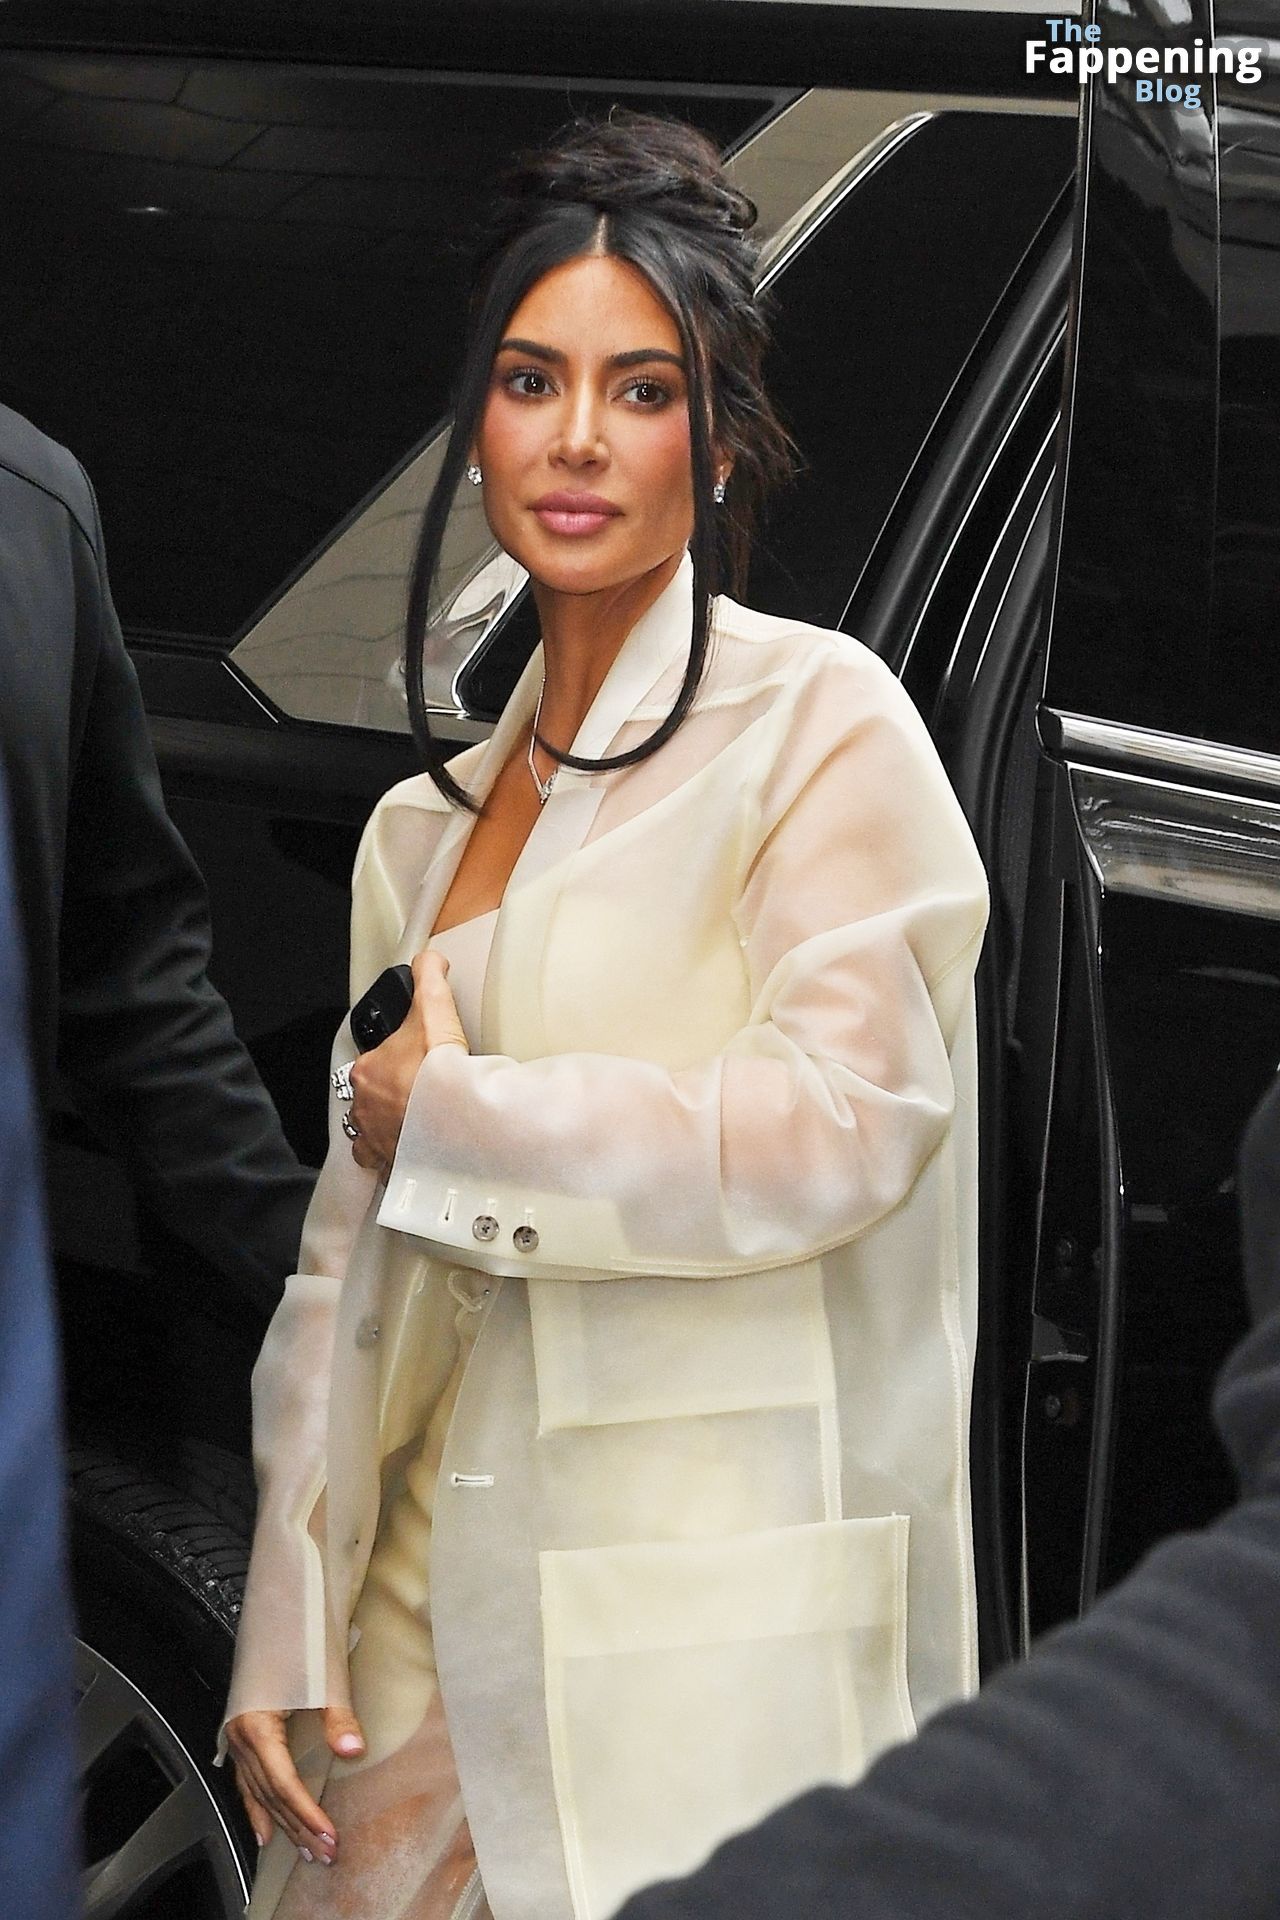 Kim-Kardashian-Sexy-The-Fappening-Blog-24-1.jpg